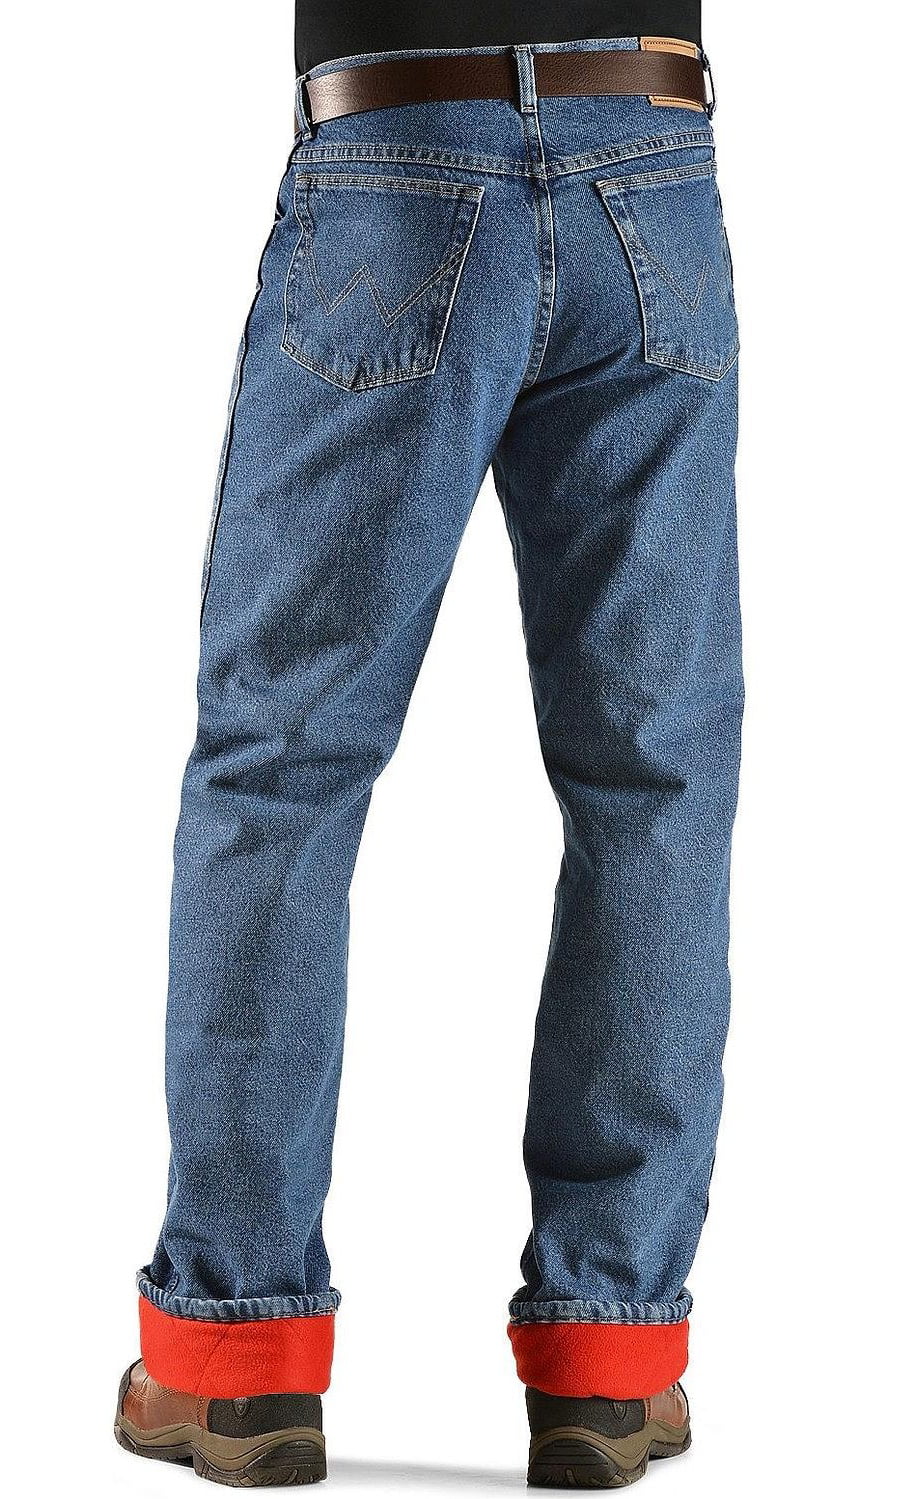 wrangler rugged jeans